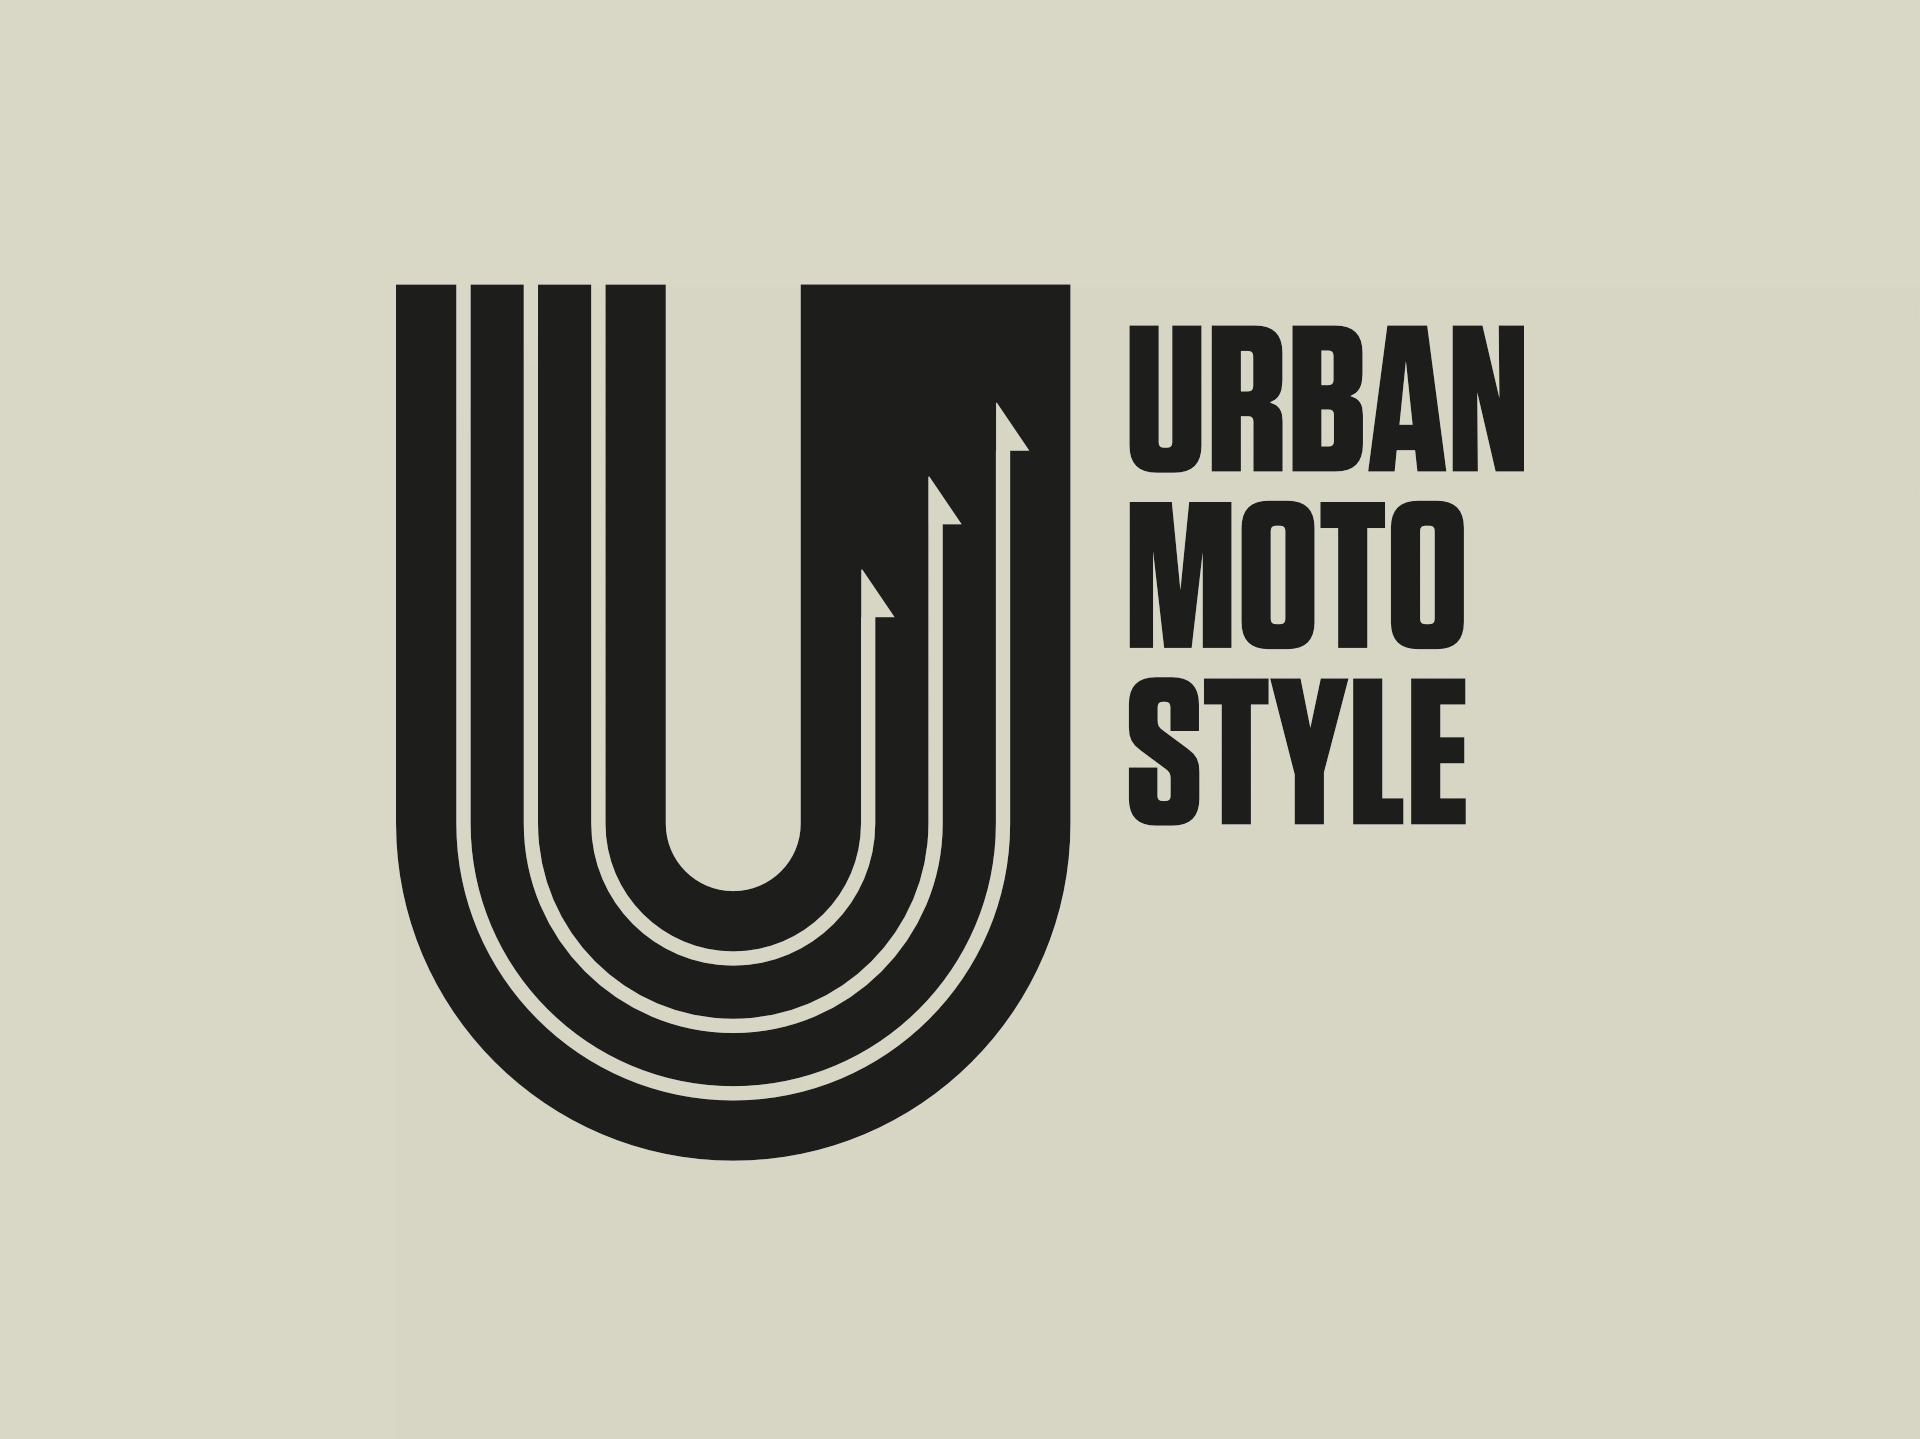 Urban Moto Style